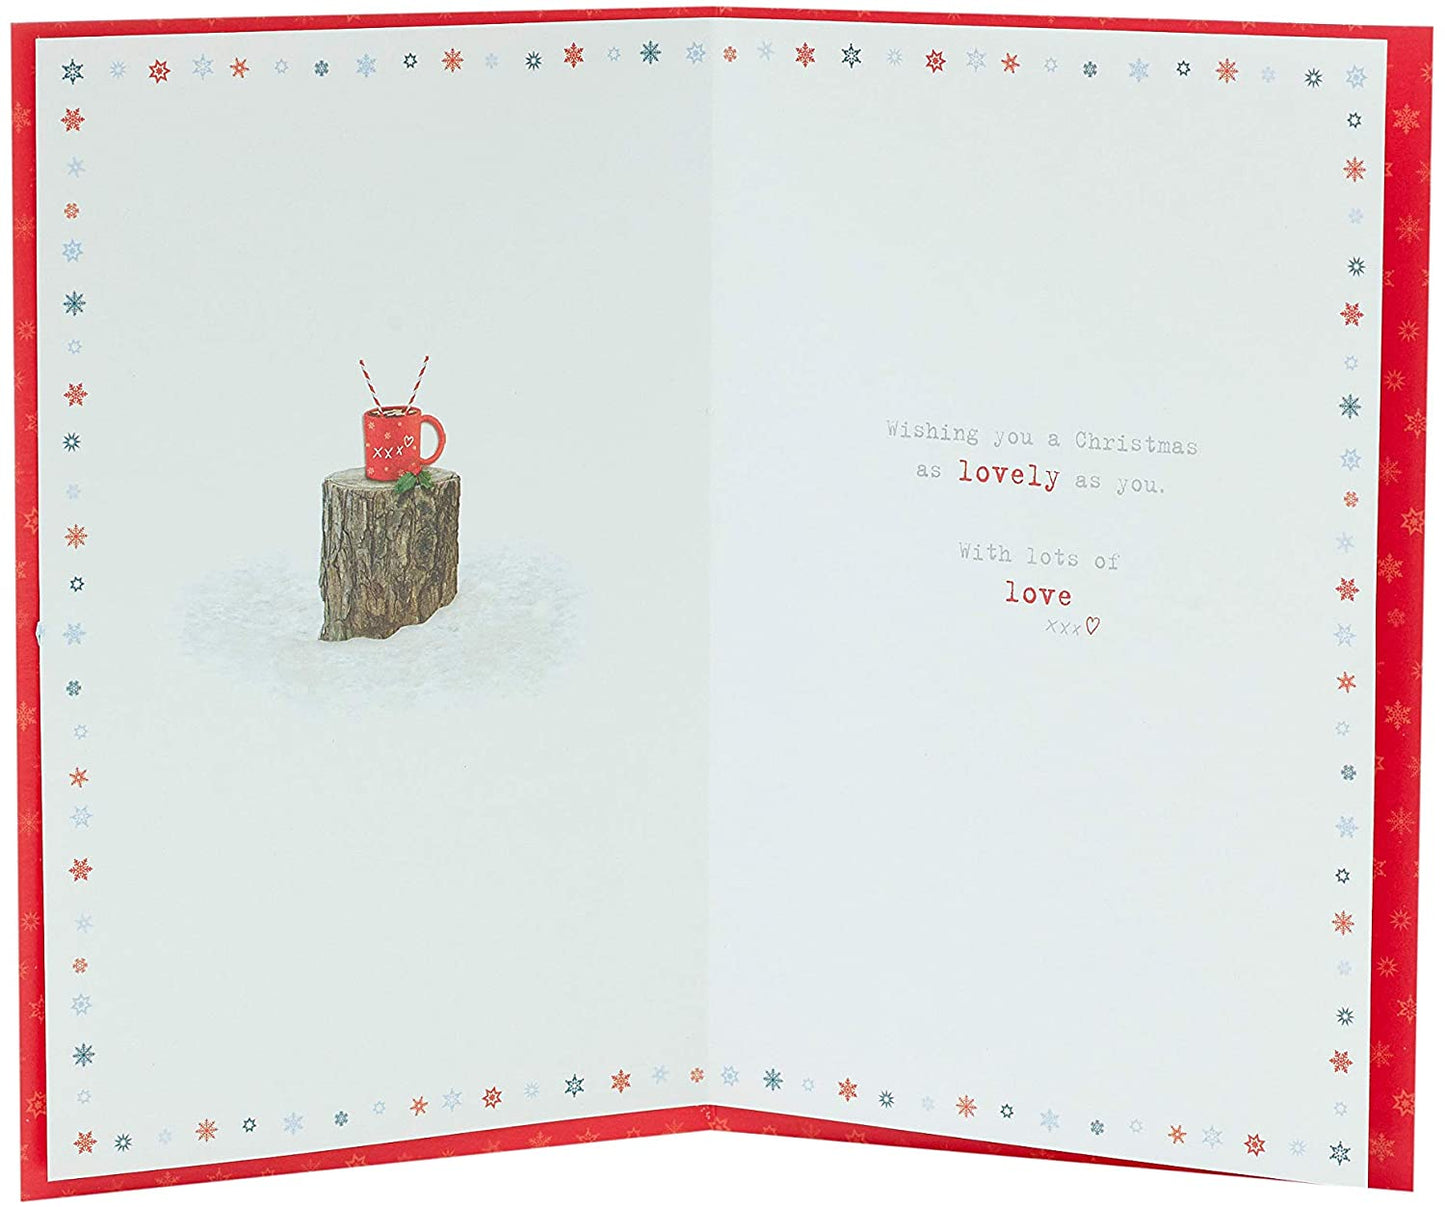 Nannie Christmas Card Cute Boofle Design 